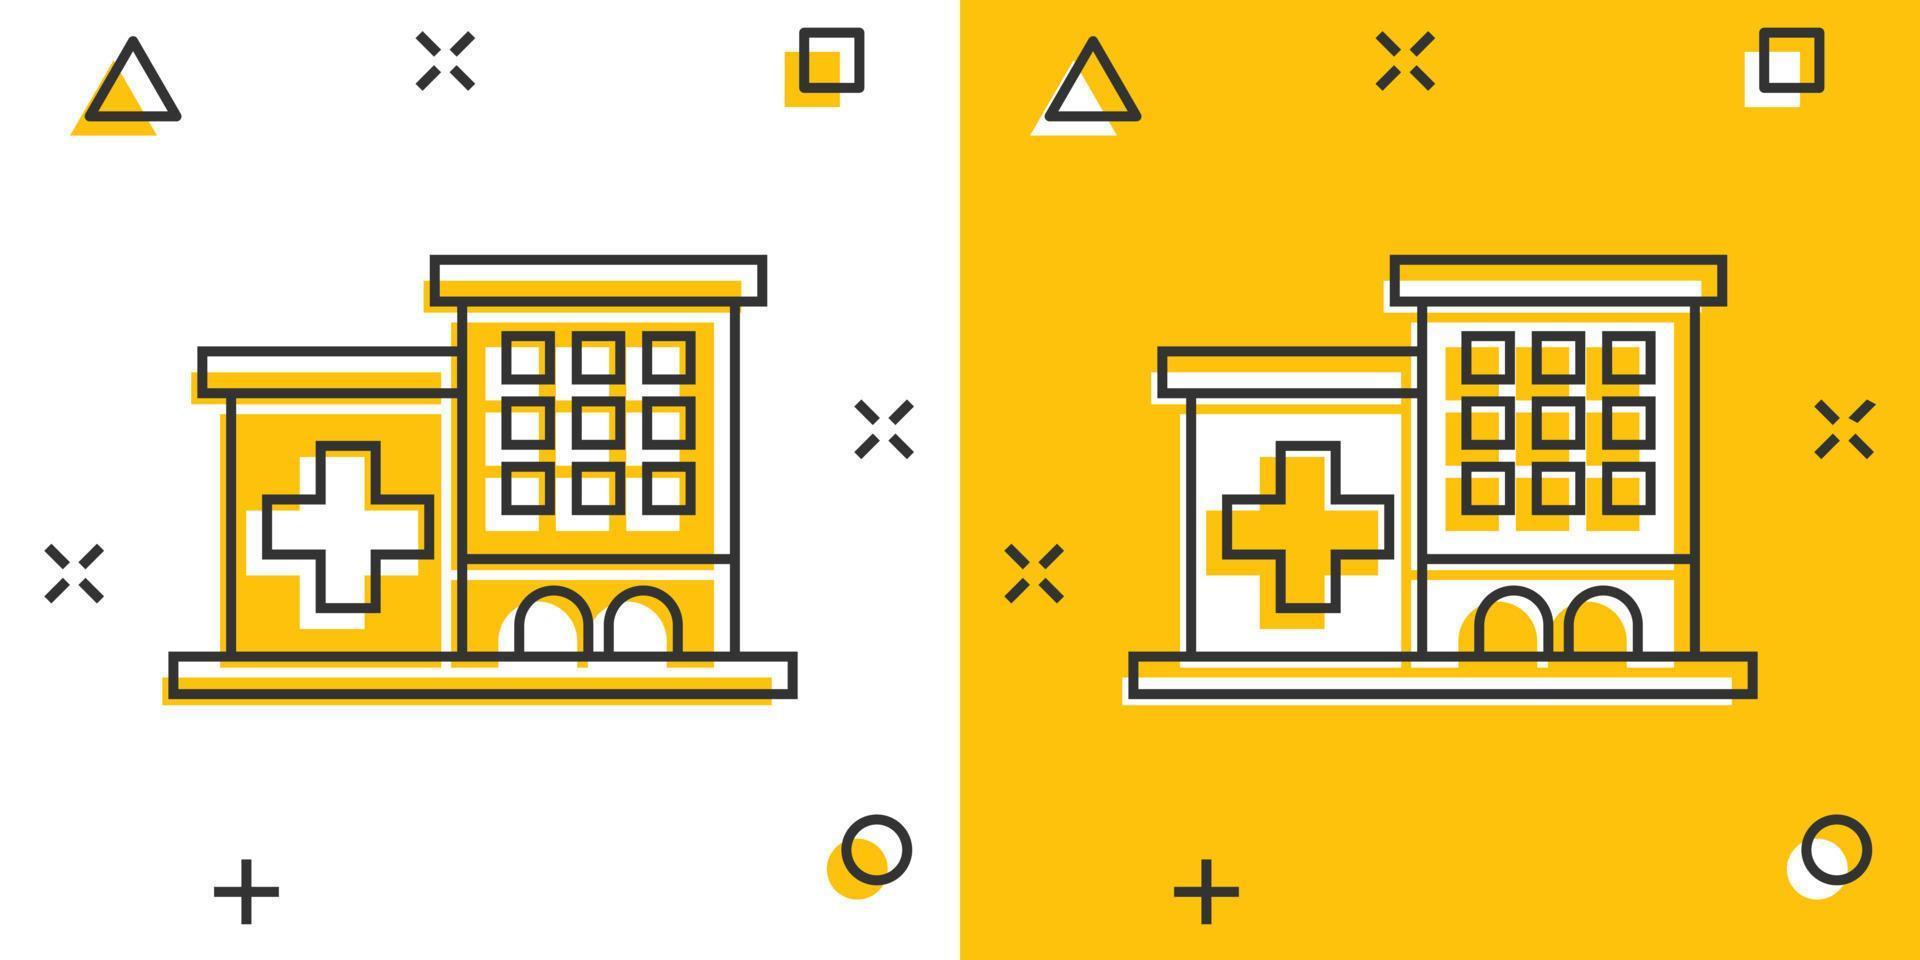 Krankenhausgebäude-Ikone im Comic-Stil. Krankenstation-Vektor-Cartoon-Illustration auf weißem, isoliertem Hintergrund. Splash-Effekt für das Geschäftskonzept des medizinischen Krankenwagens. vektor